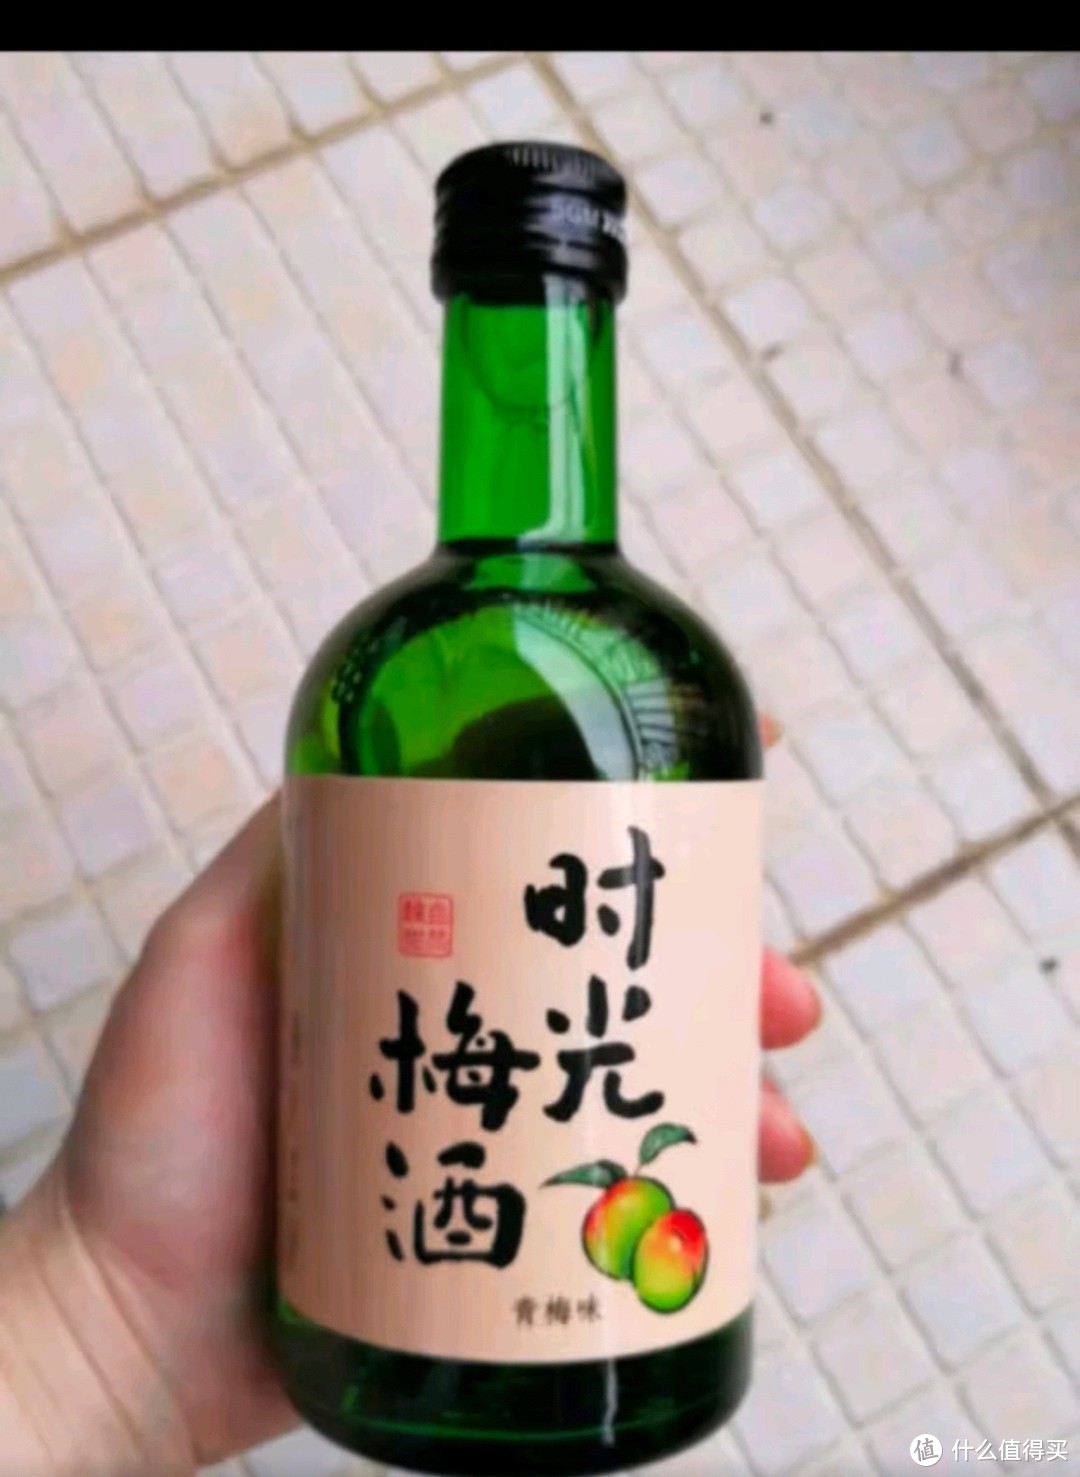 江记酒庄 时光梅酒 果酒 8度330ml 单瓶装 梅见青梅酒1